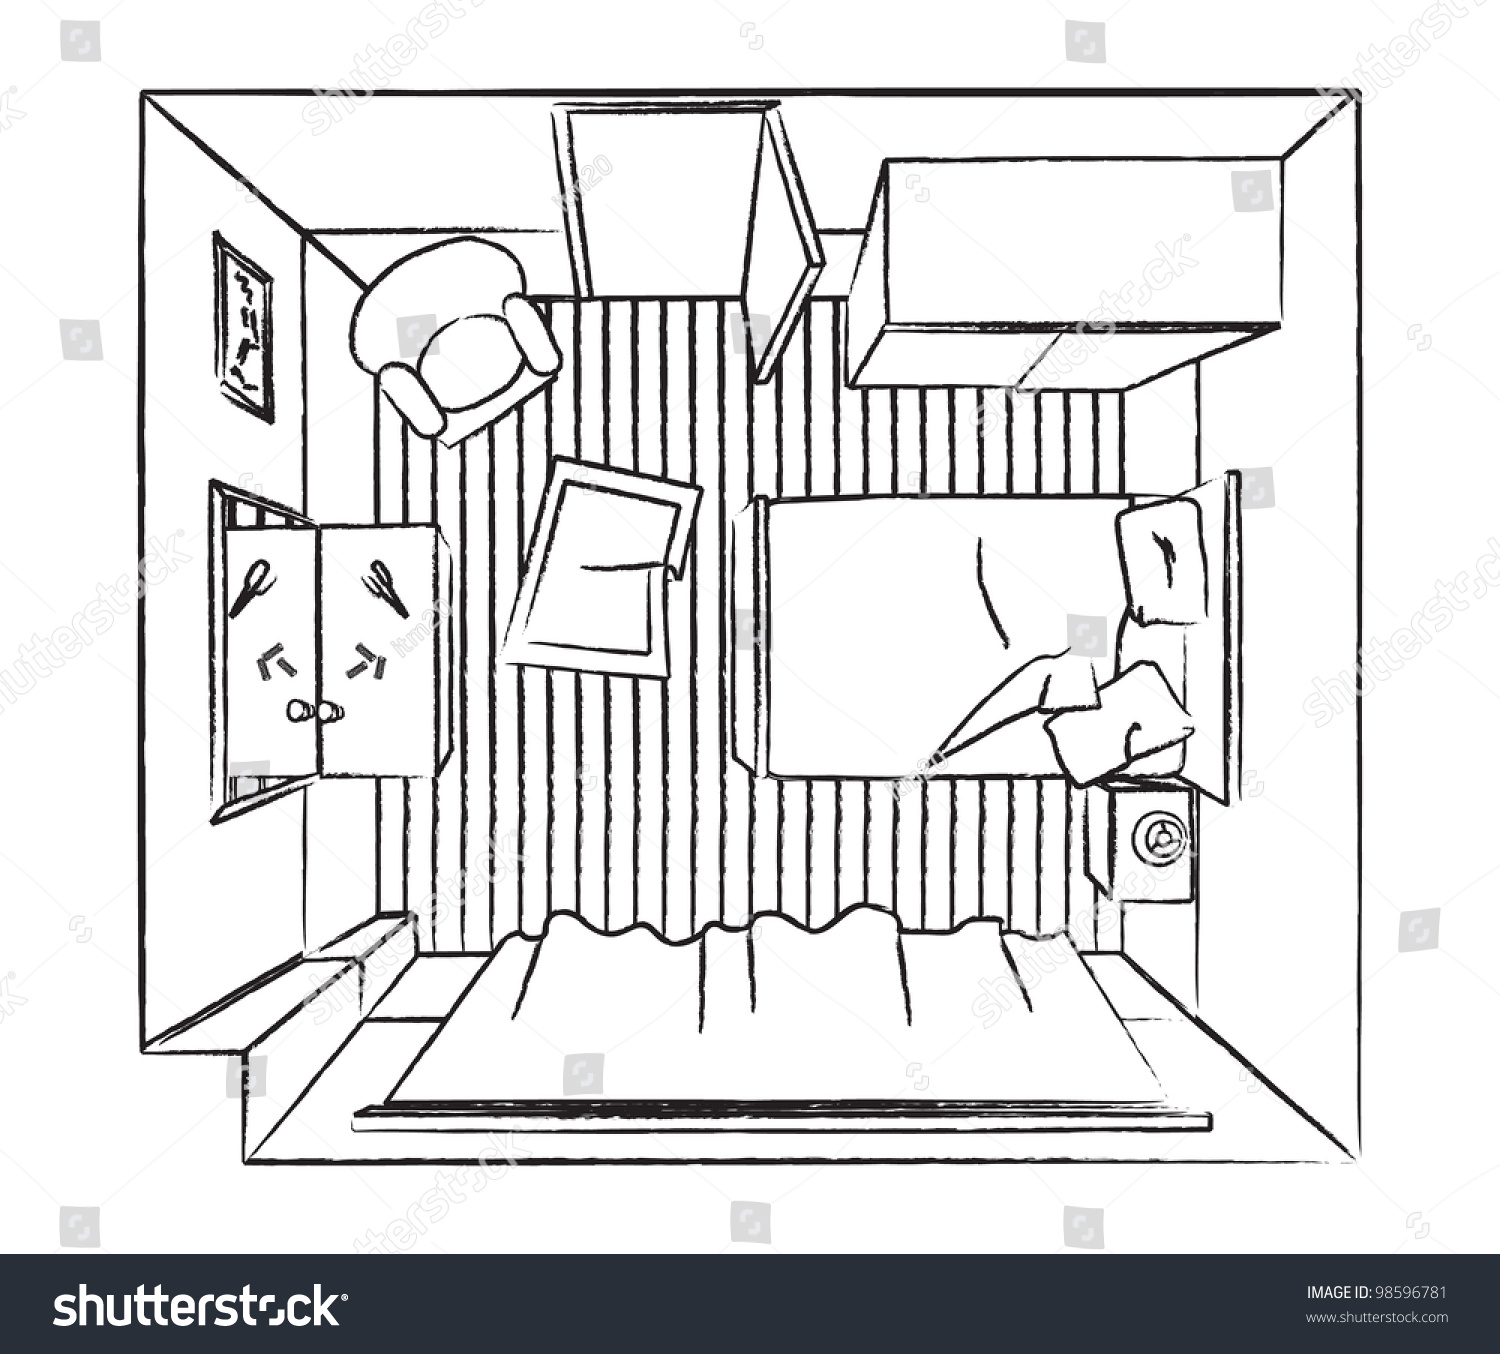 Outline Bedroom Interior Top View Stock Vector 98596781 : Shutterstock